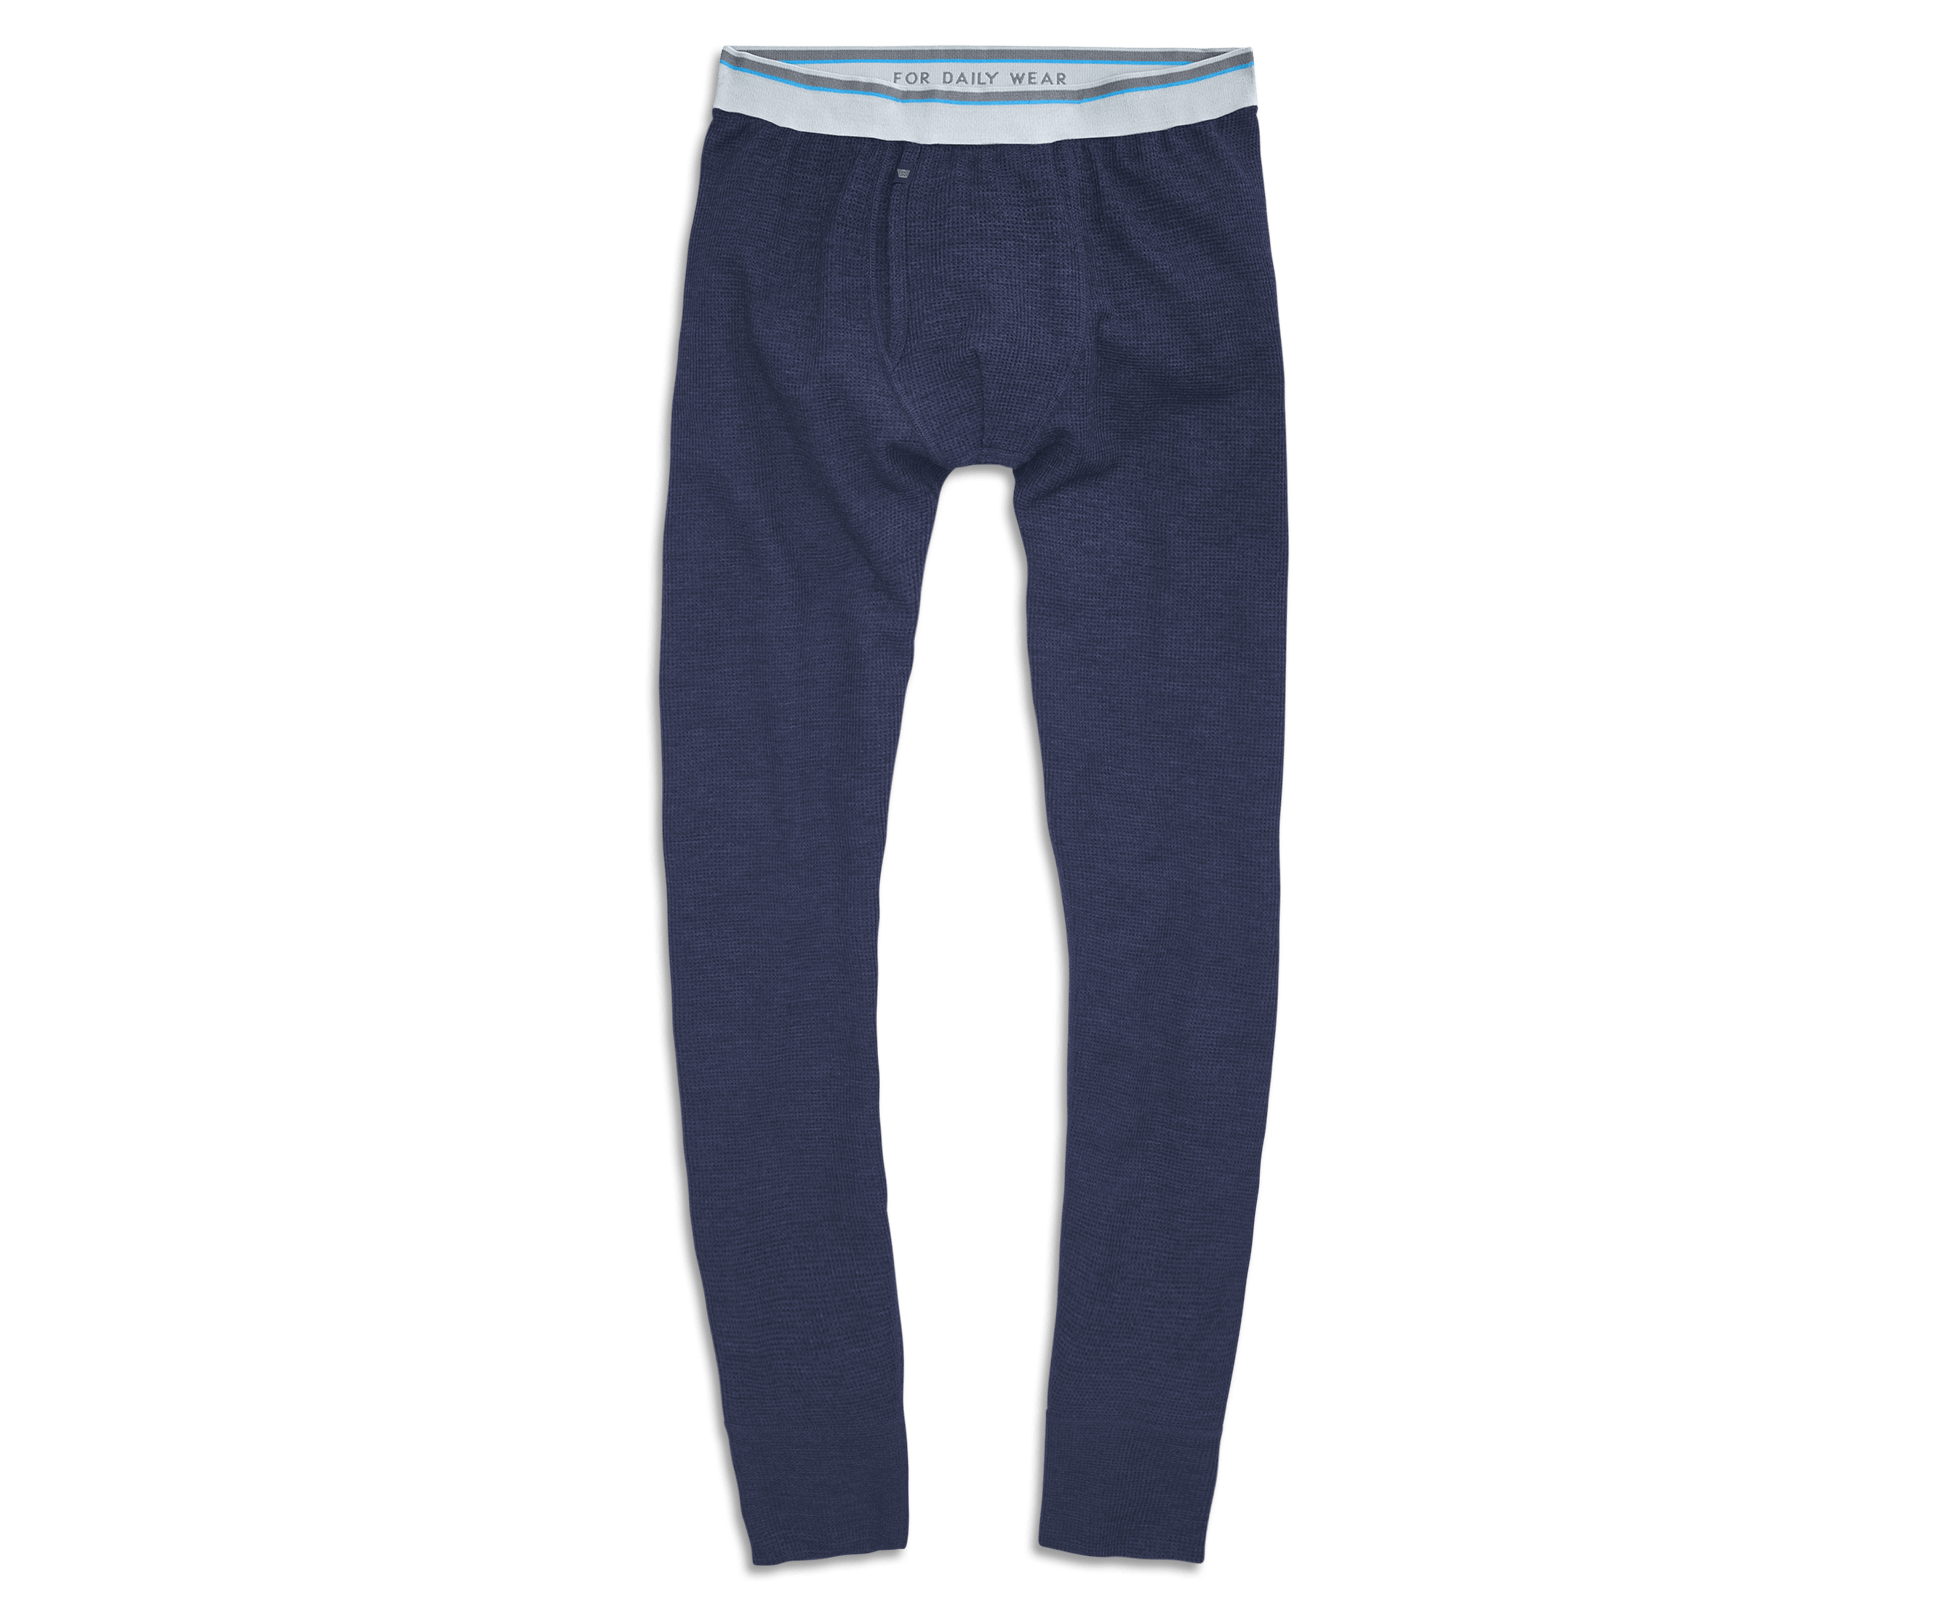 Waffle Knit Thermal Underwear Sale Online | bellvalefarms.com